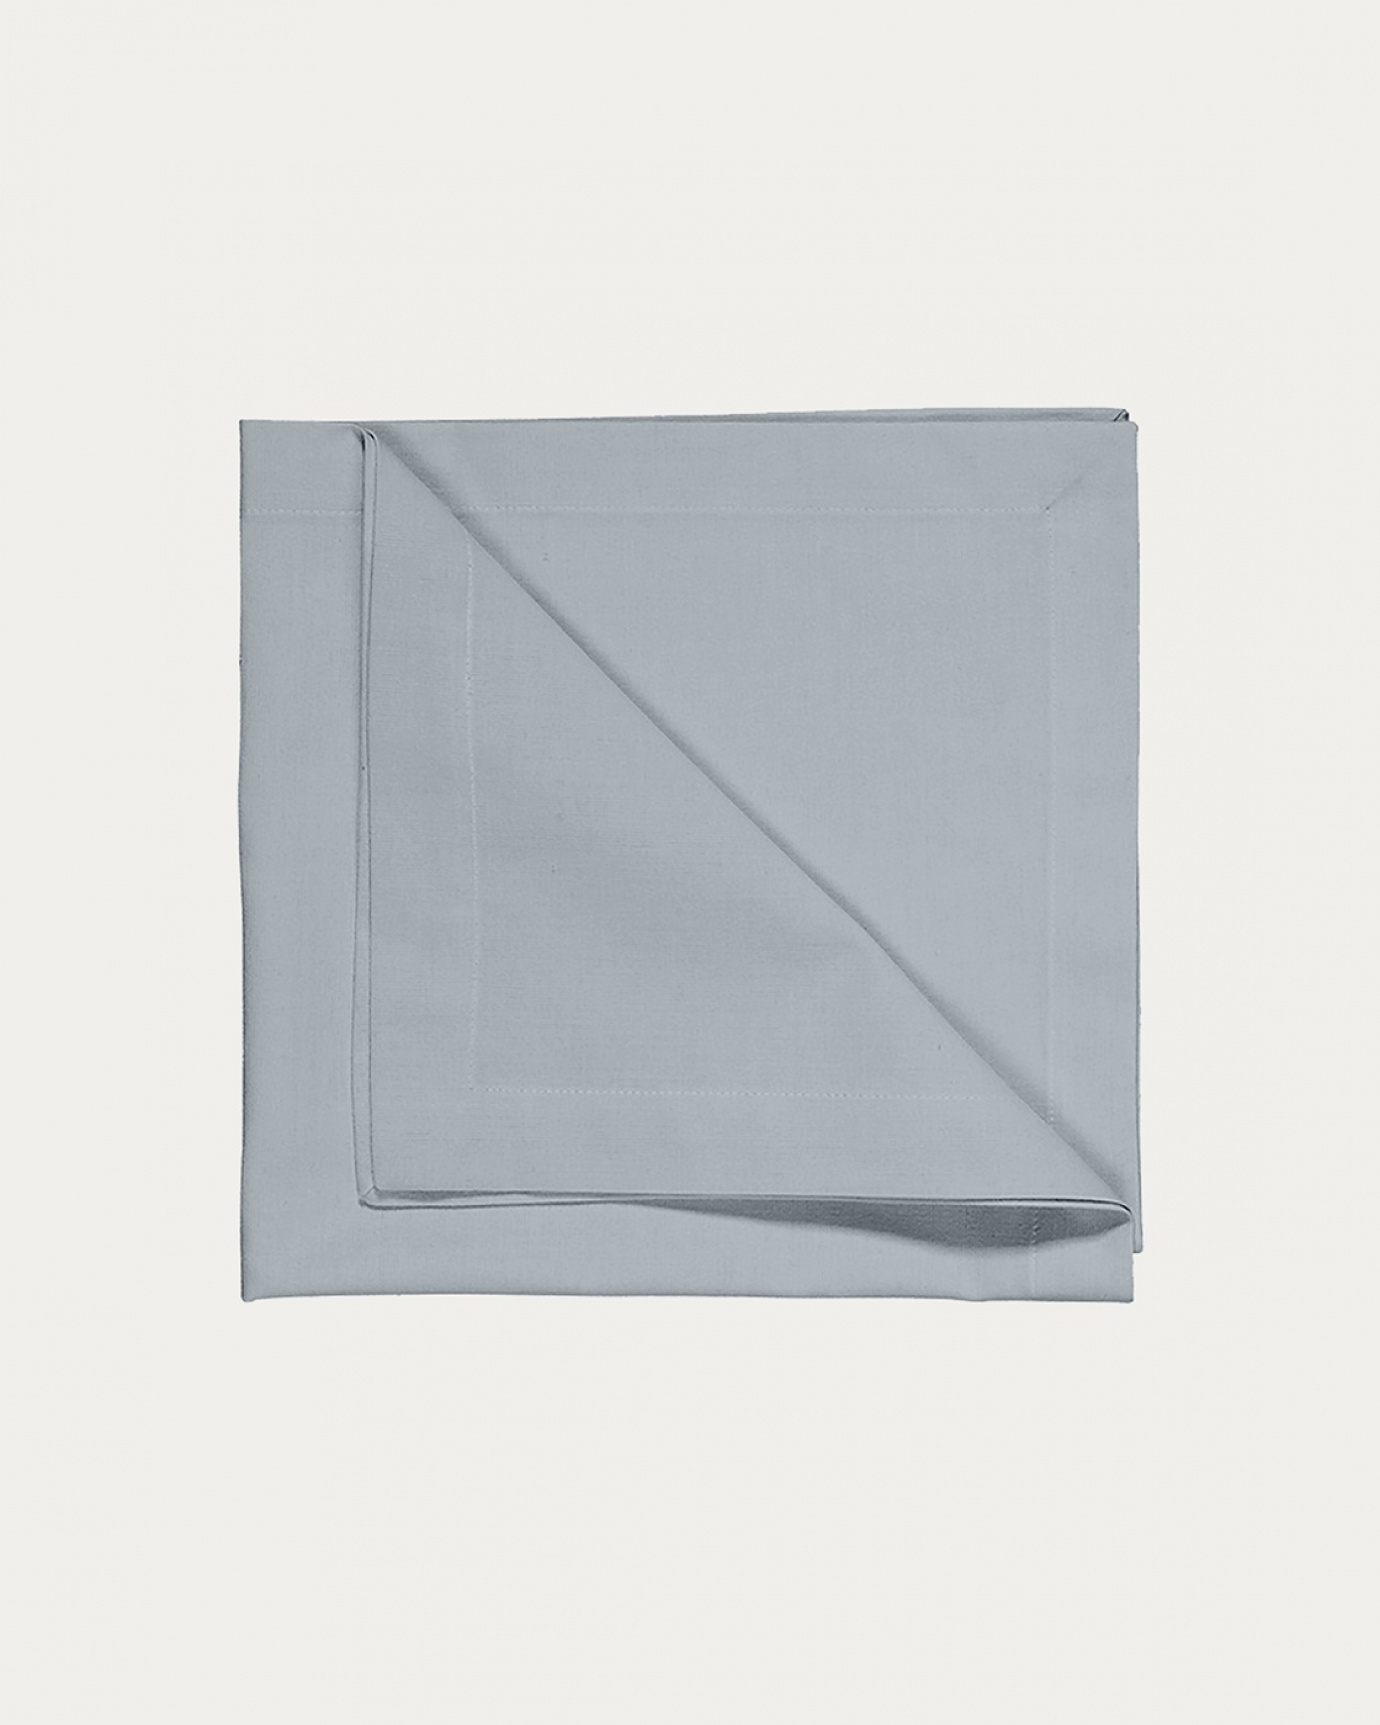 Produktbild helles graublau ROBERT Serviette aus weicher Baumwolle von LINUM DESIGN. Größe 45x45 cm und in 4er-Pack verkauft.